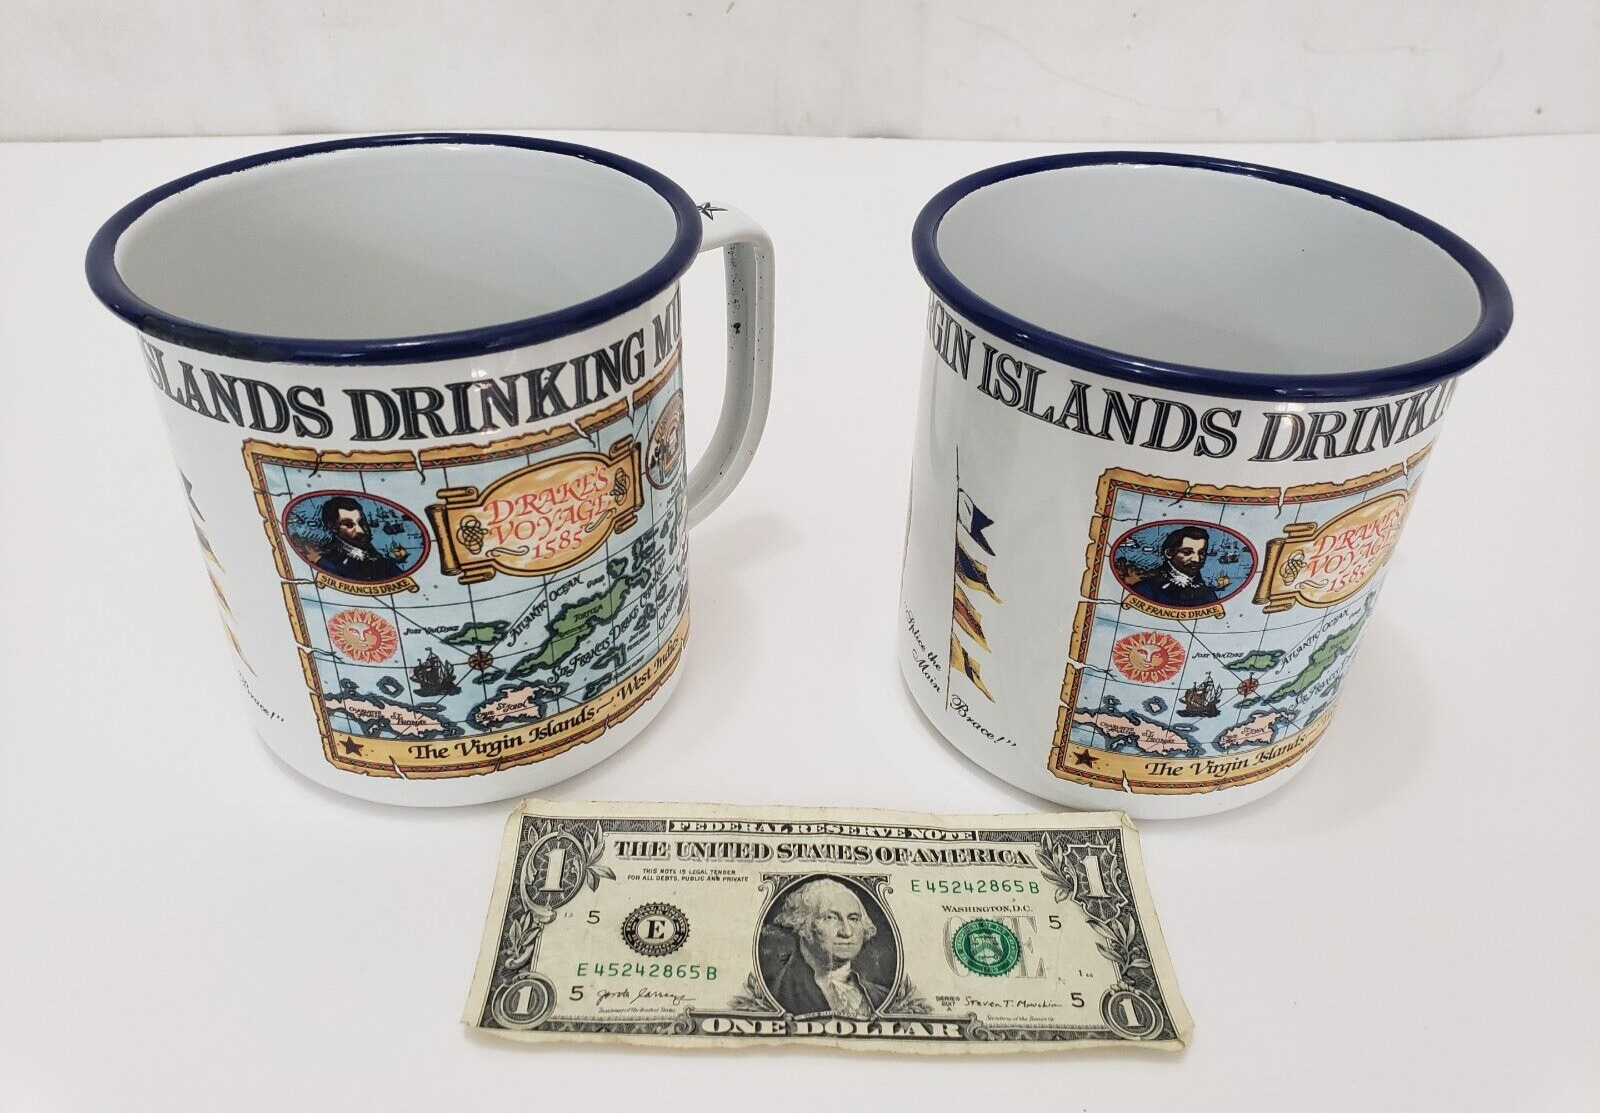 Pusser\'s Rum Virgin Islands Drinking Mug - LOT of 2 Large Metal Cup - Enameled